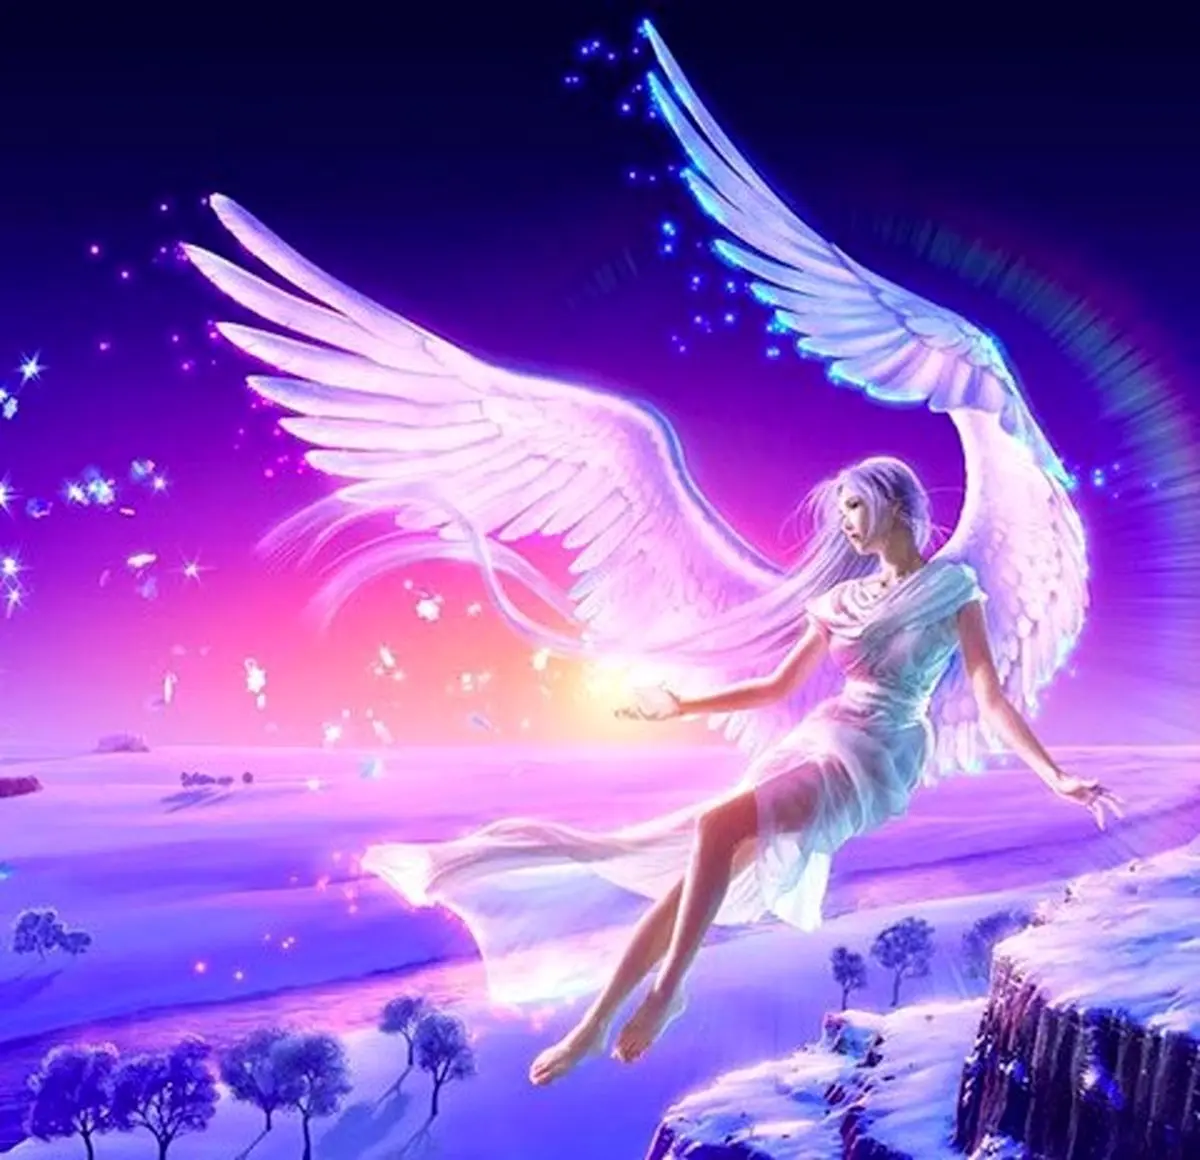 فال فرشتگان 10 آبان ماه | فرشتگان برای شما چه پیام مثبتی دارند؟